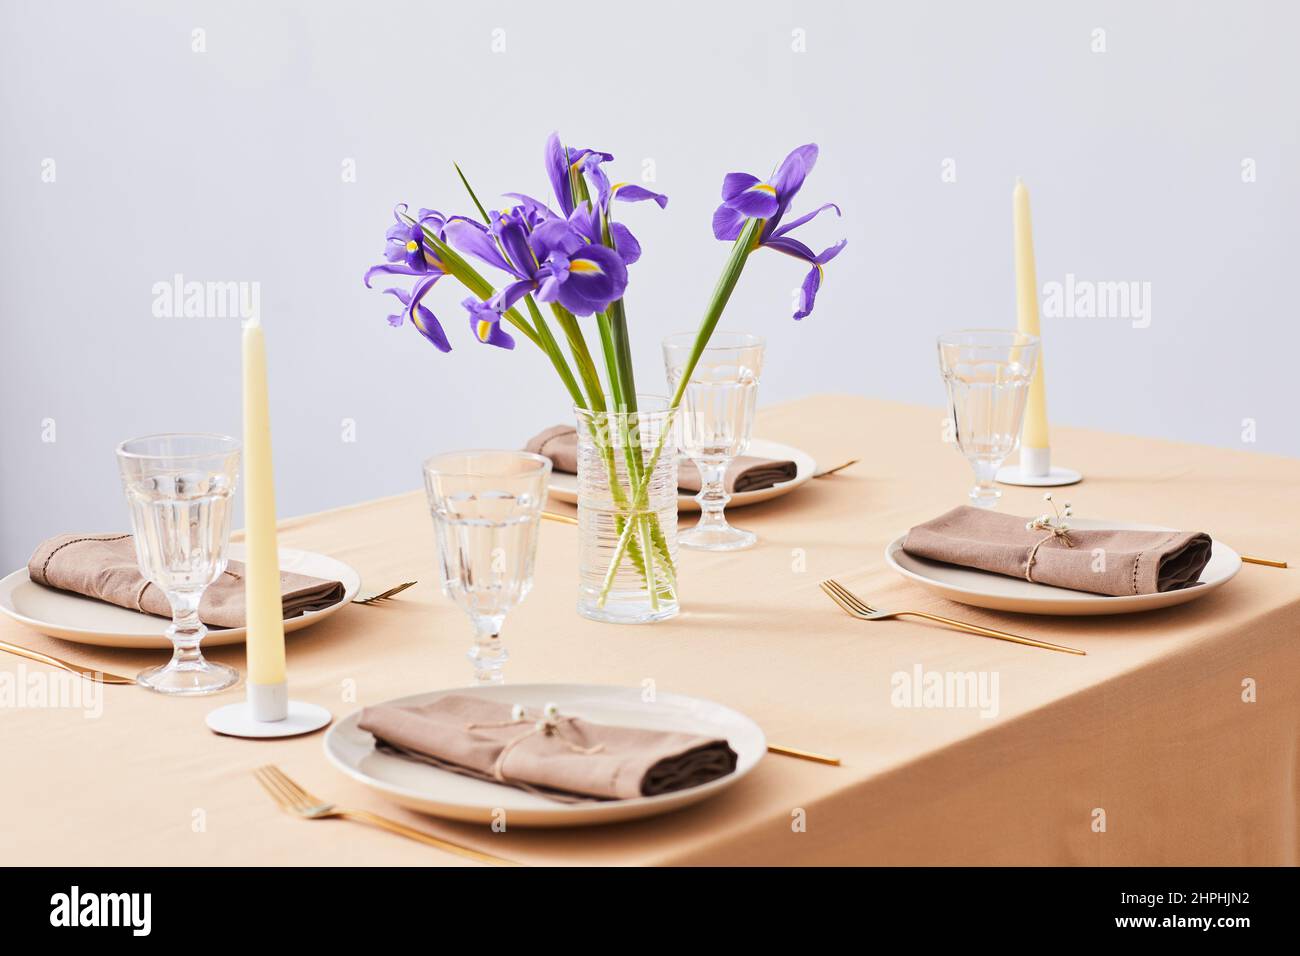 Imagen de fondo mínima de una elegante mesa de cena decorada con flores Iris para primavera, espacio de copia Foto de stock